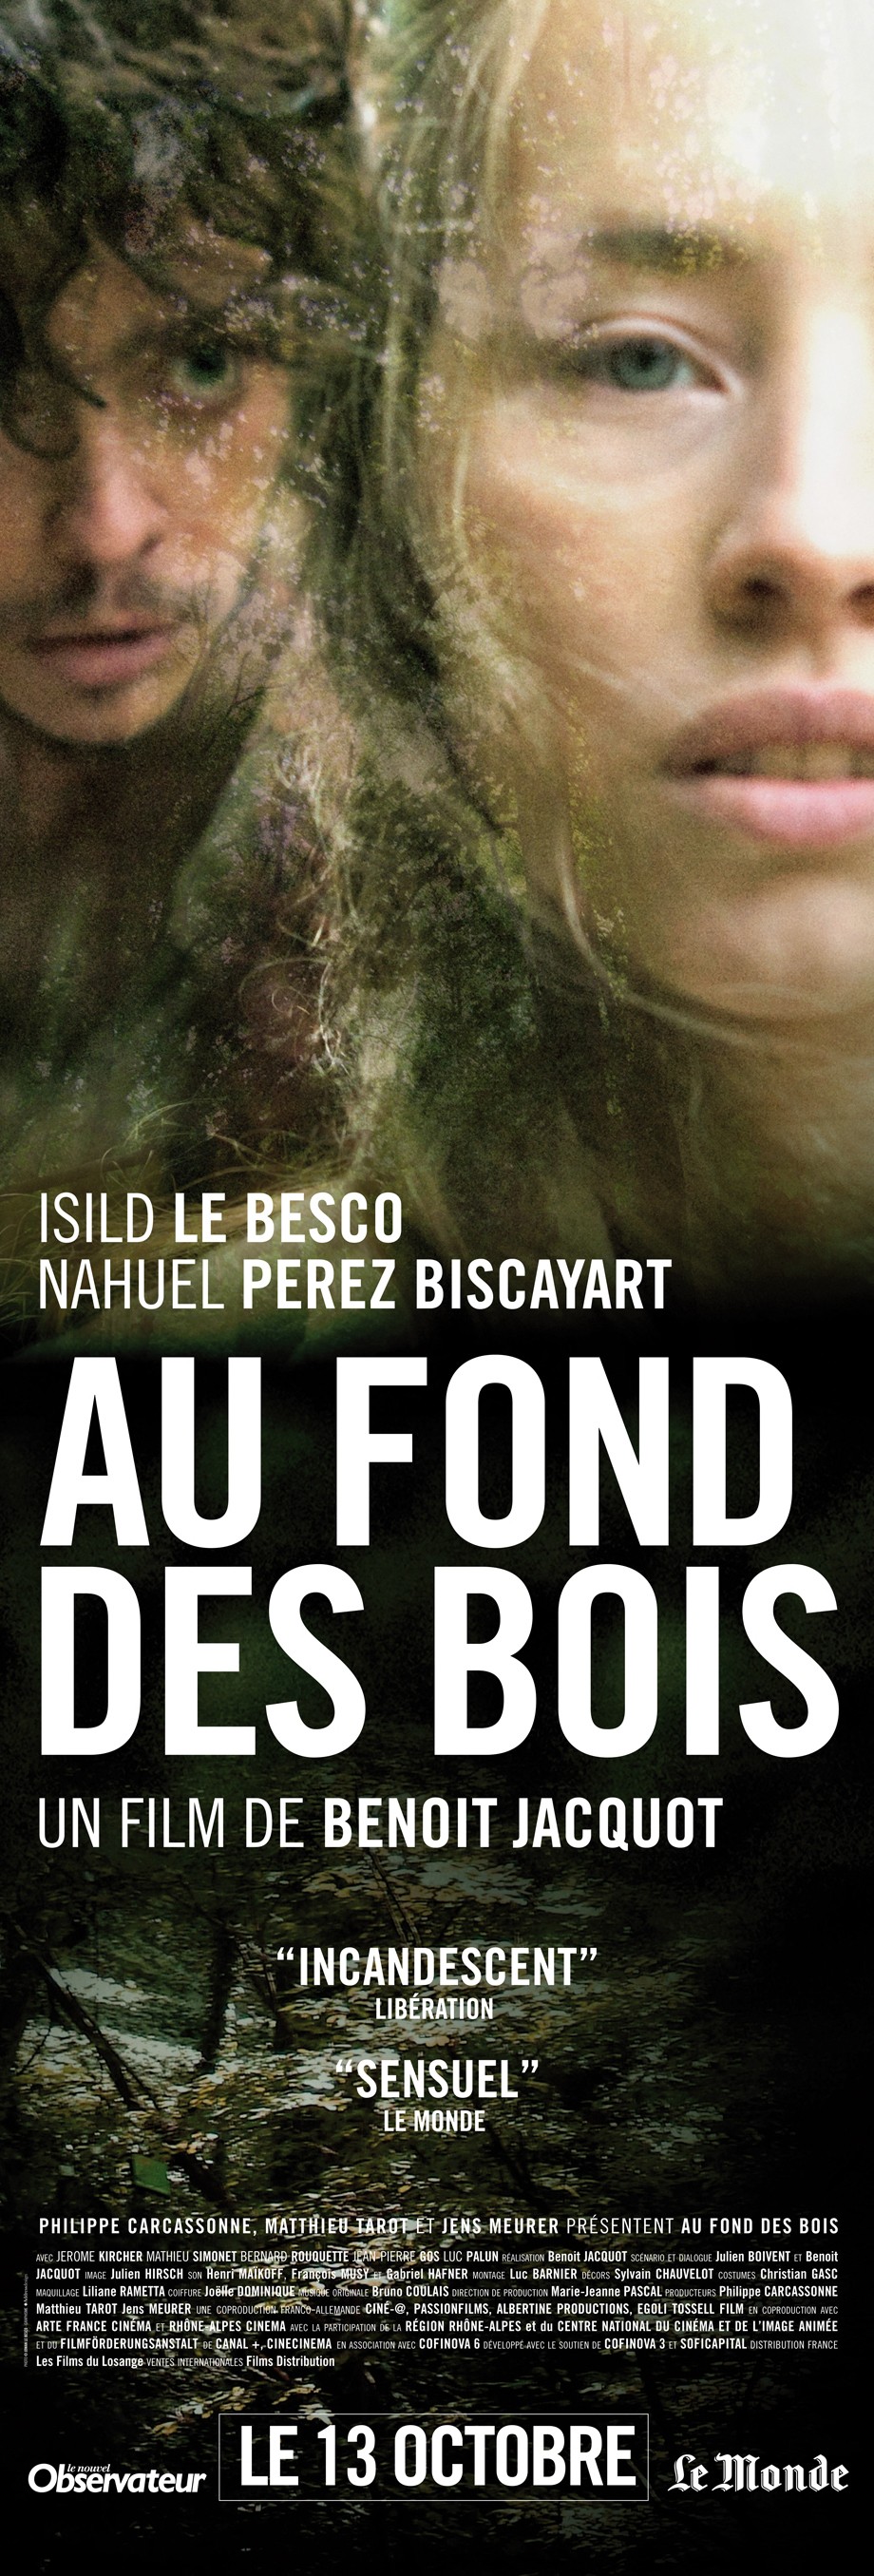 Mega Sized Movie Poster Image for Au fond des bois (#2 of 2)